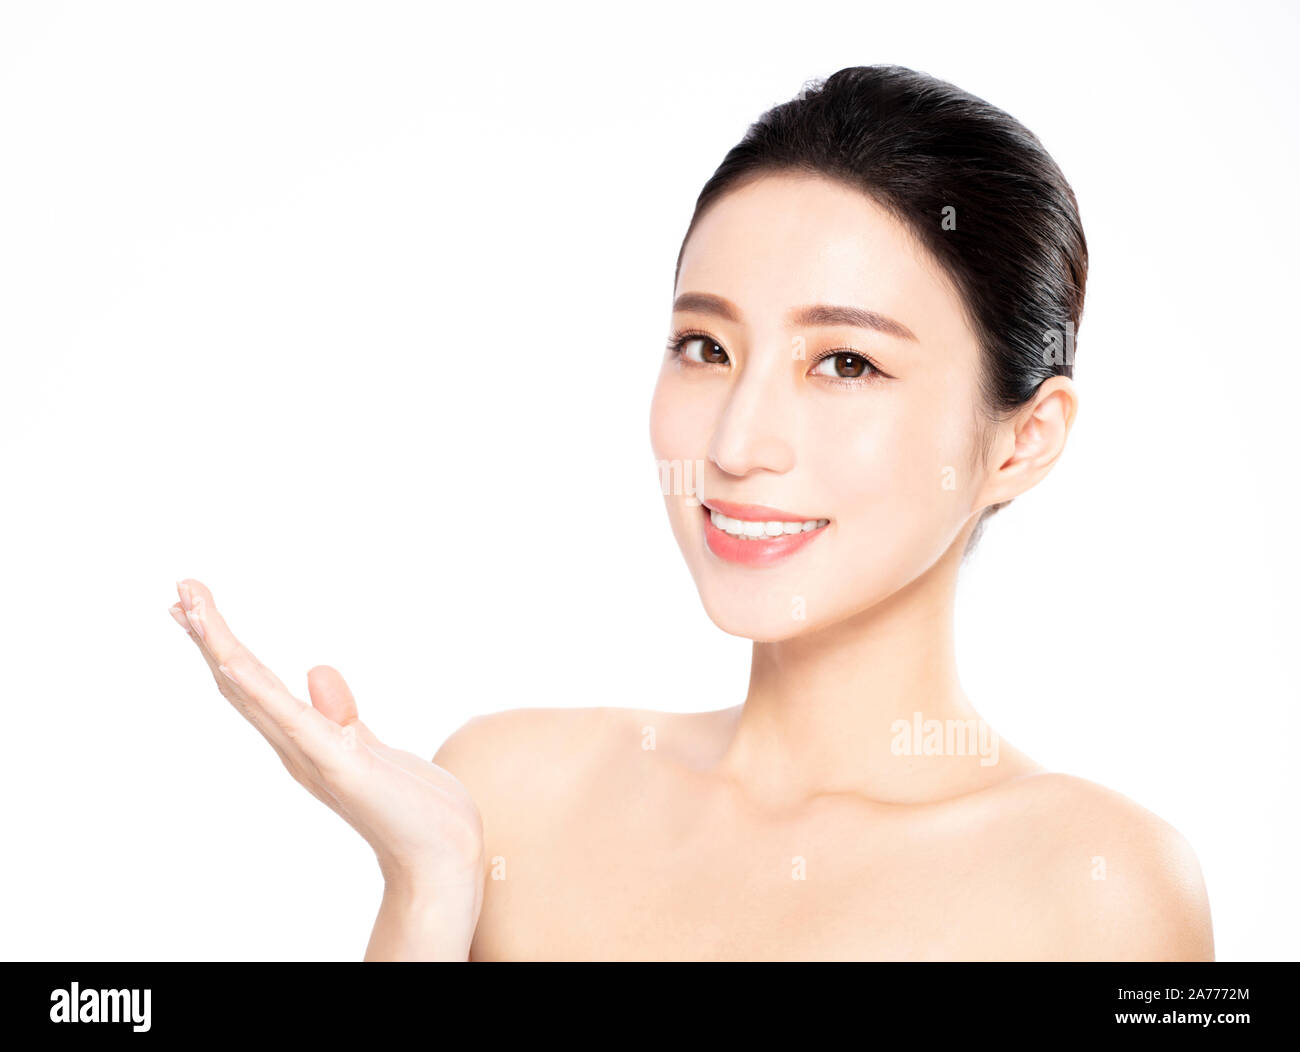 Bel volto di donna giovane con pulire la pelle fresca Foto Stock